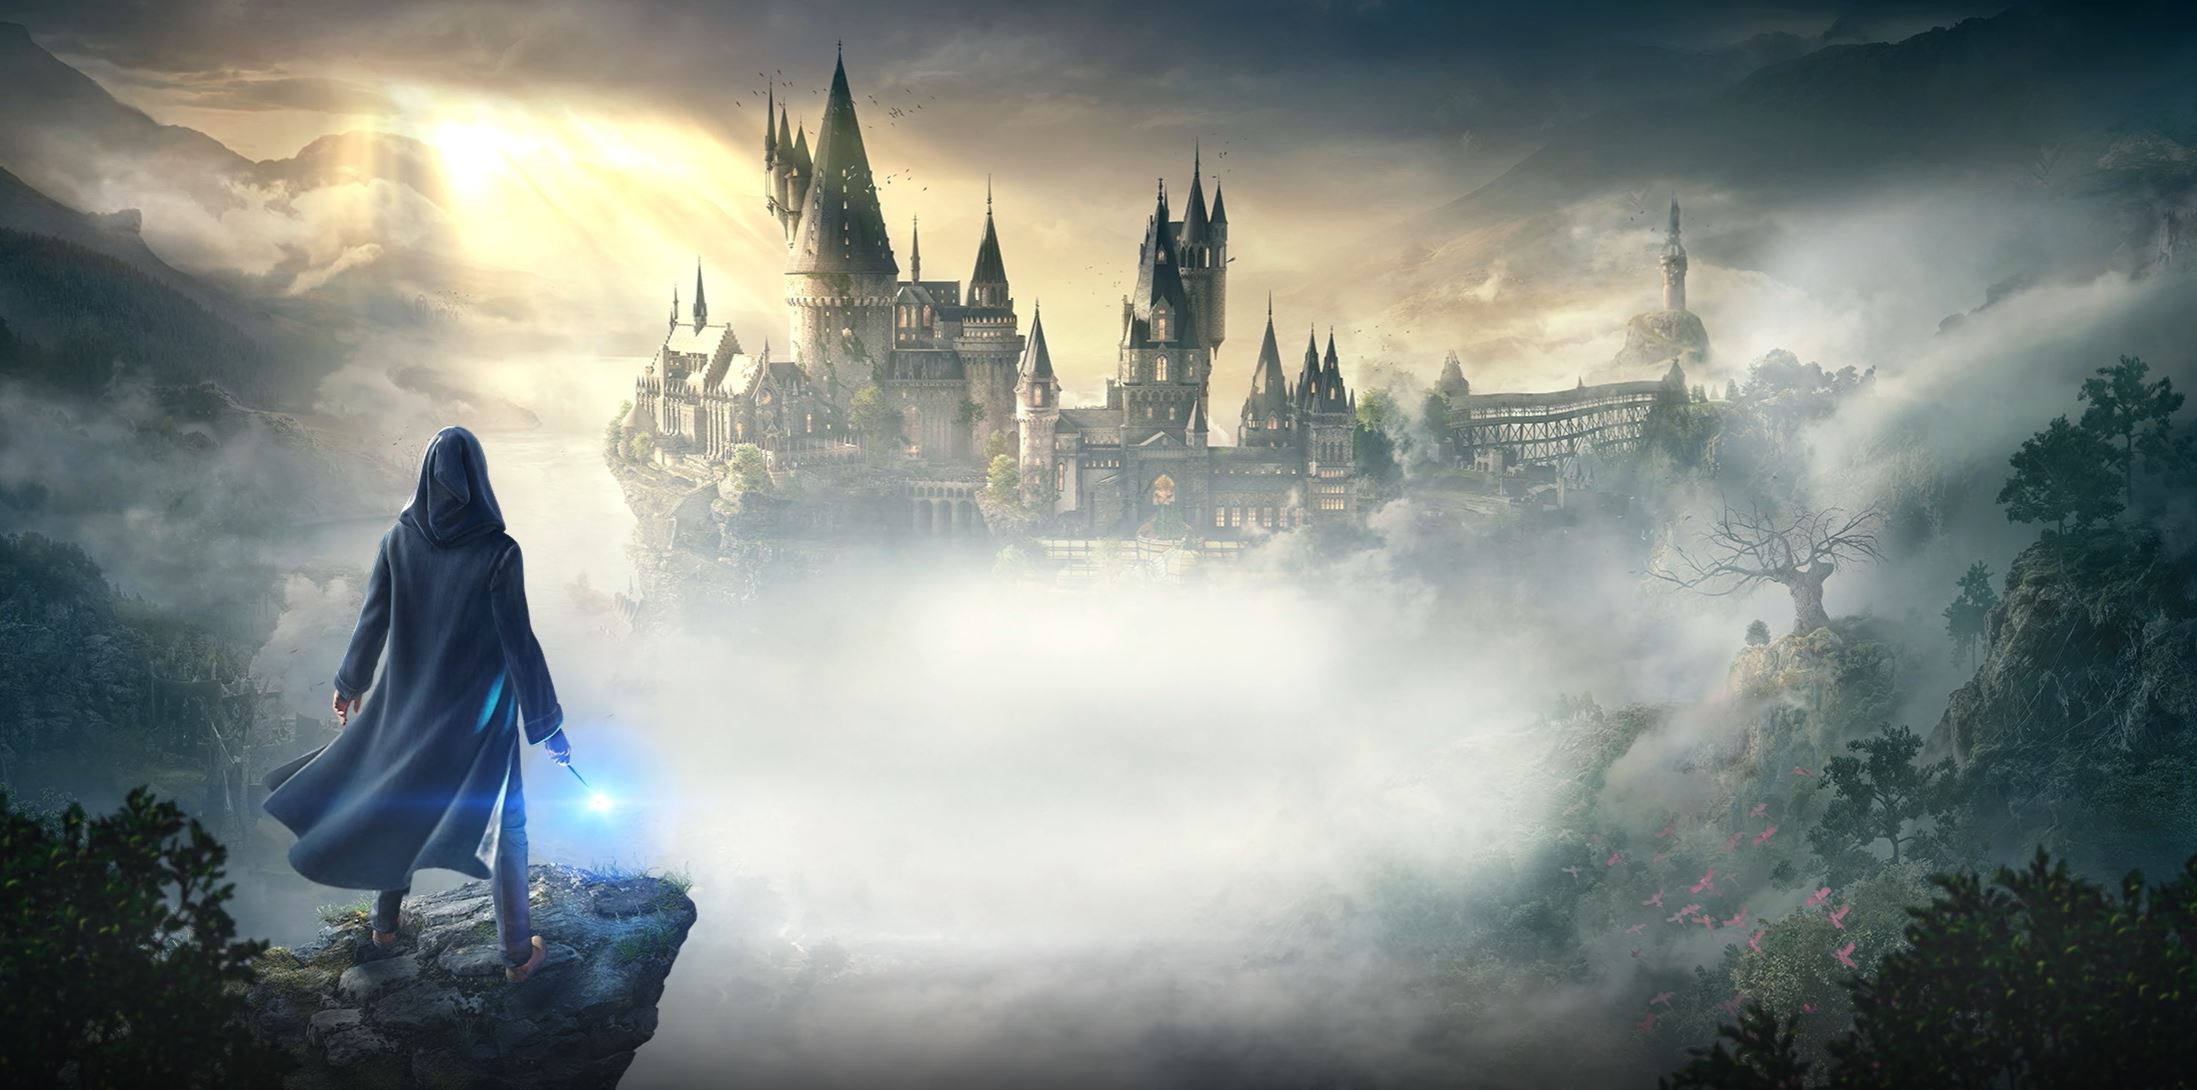 Hogwarts Legacy Standard Edition Xbox One [Digital] G3Q-01876